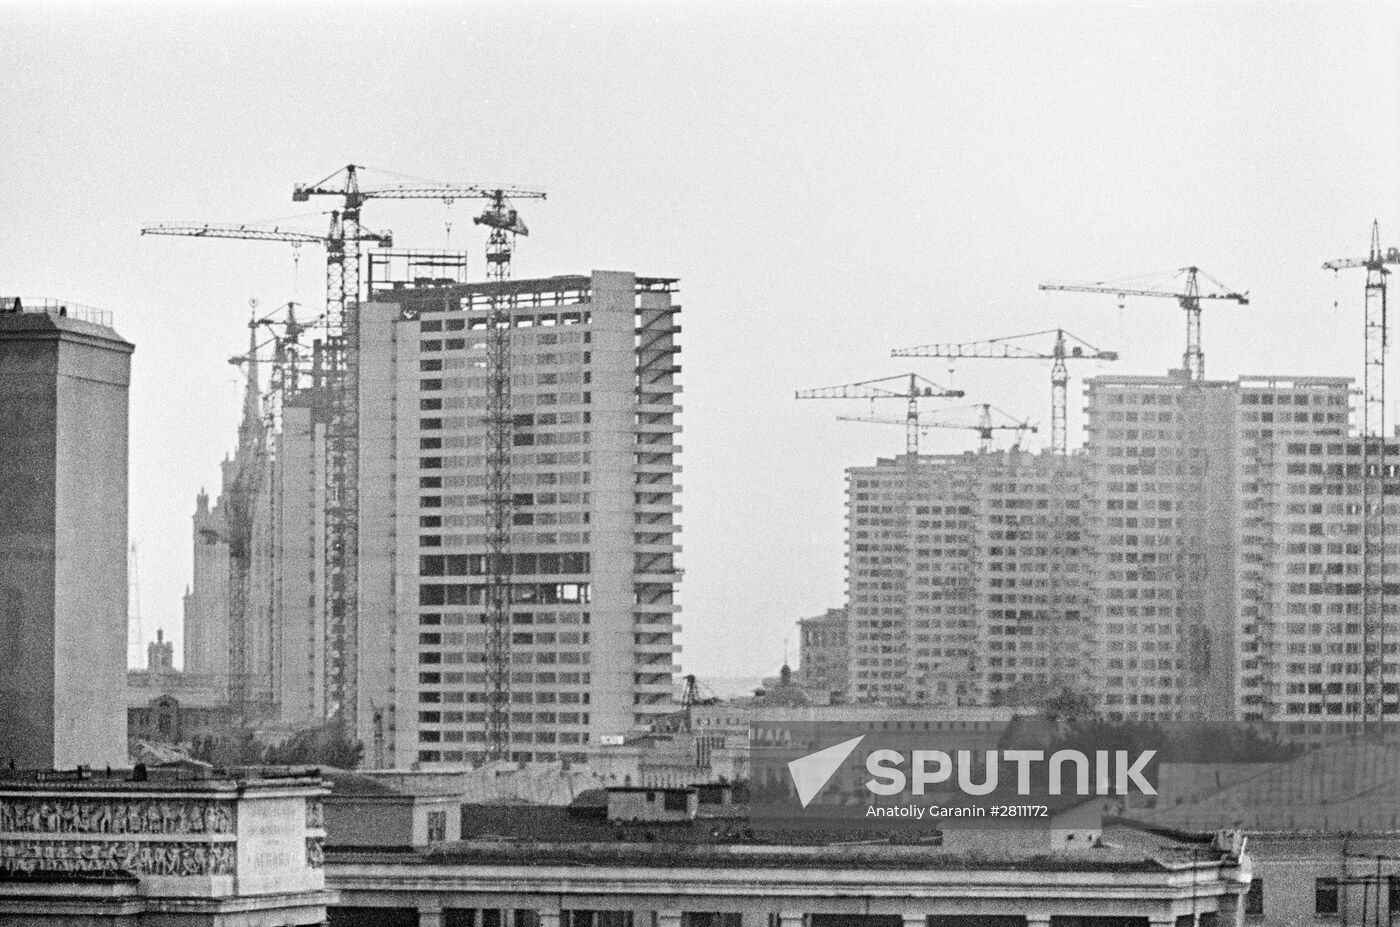 Construction works on Prospekt Kalinina